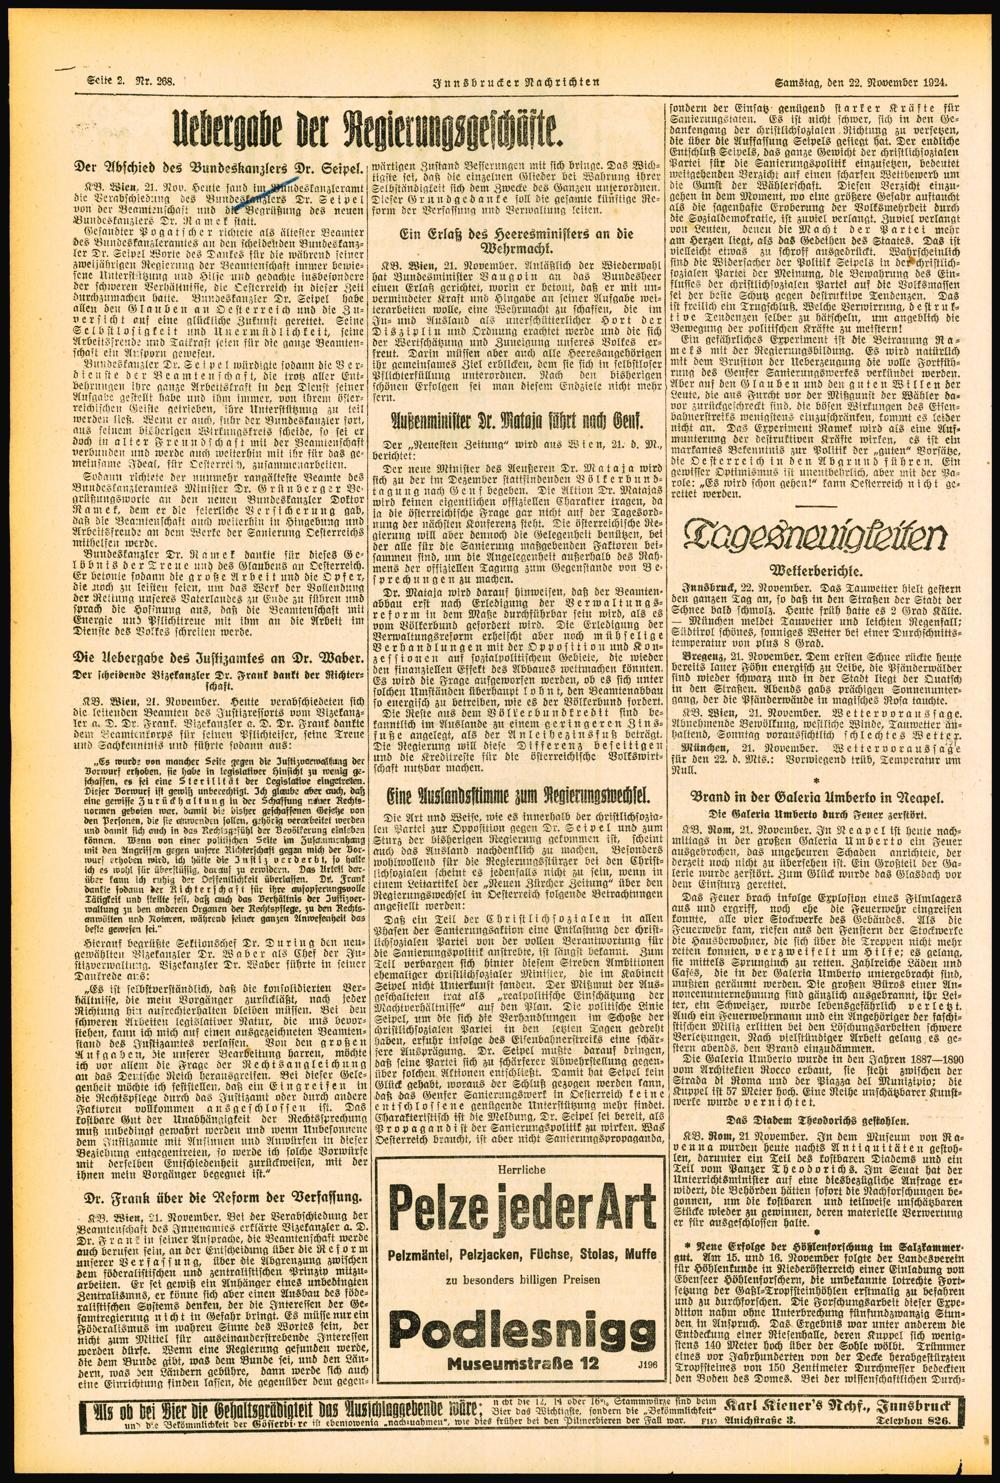 Seite 2. Nr. 268. Innsbrucker Nachrichten Samstag, den 22. November 1924. Monte tel Der Abschied des Bundeskanzlers Dr. Seipel, iwärtigen Zustand Besserungen mit sich bringe.